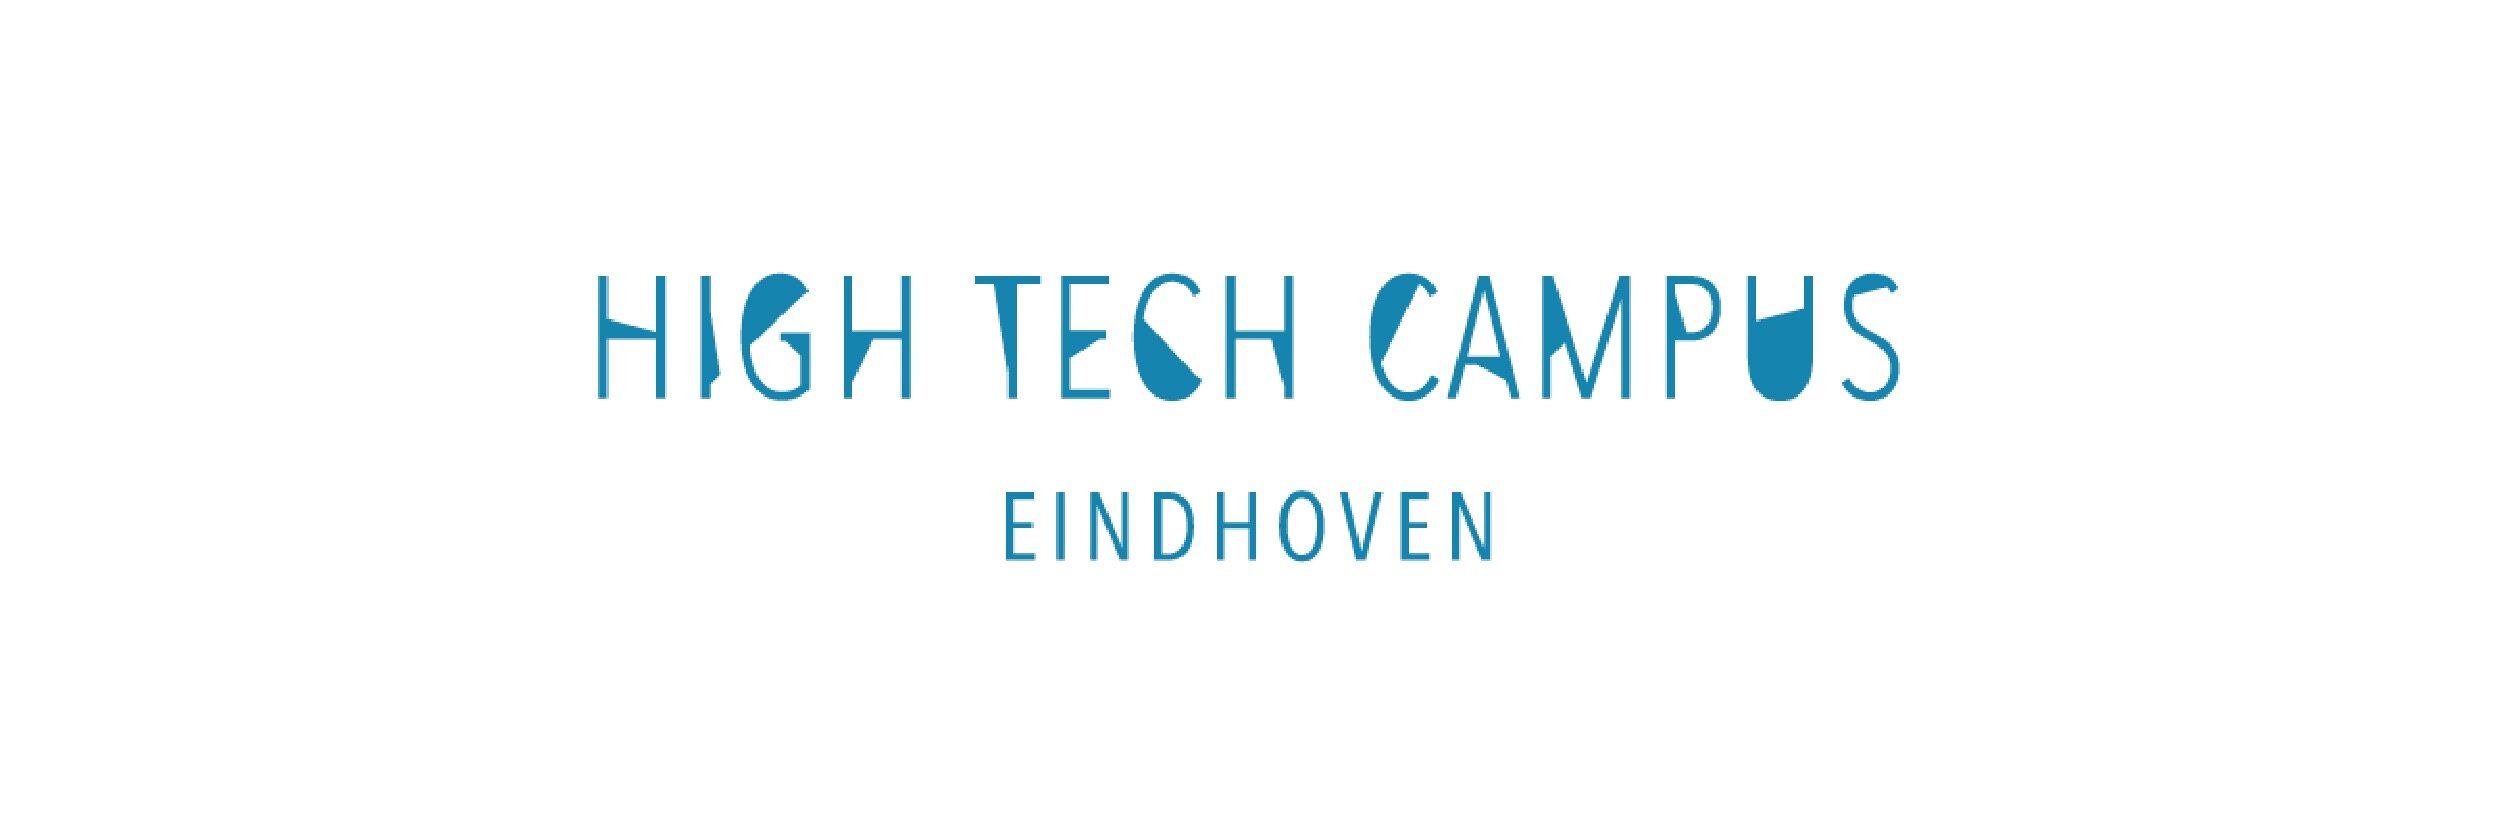 hightechcampus logo 2020.jpg